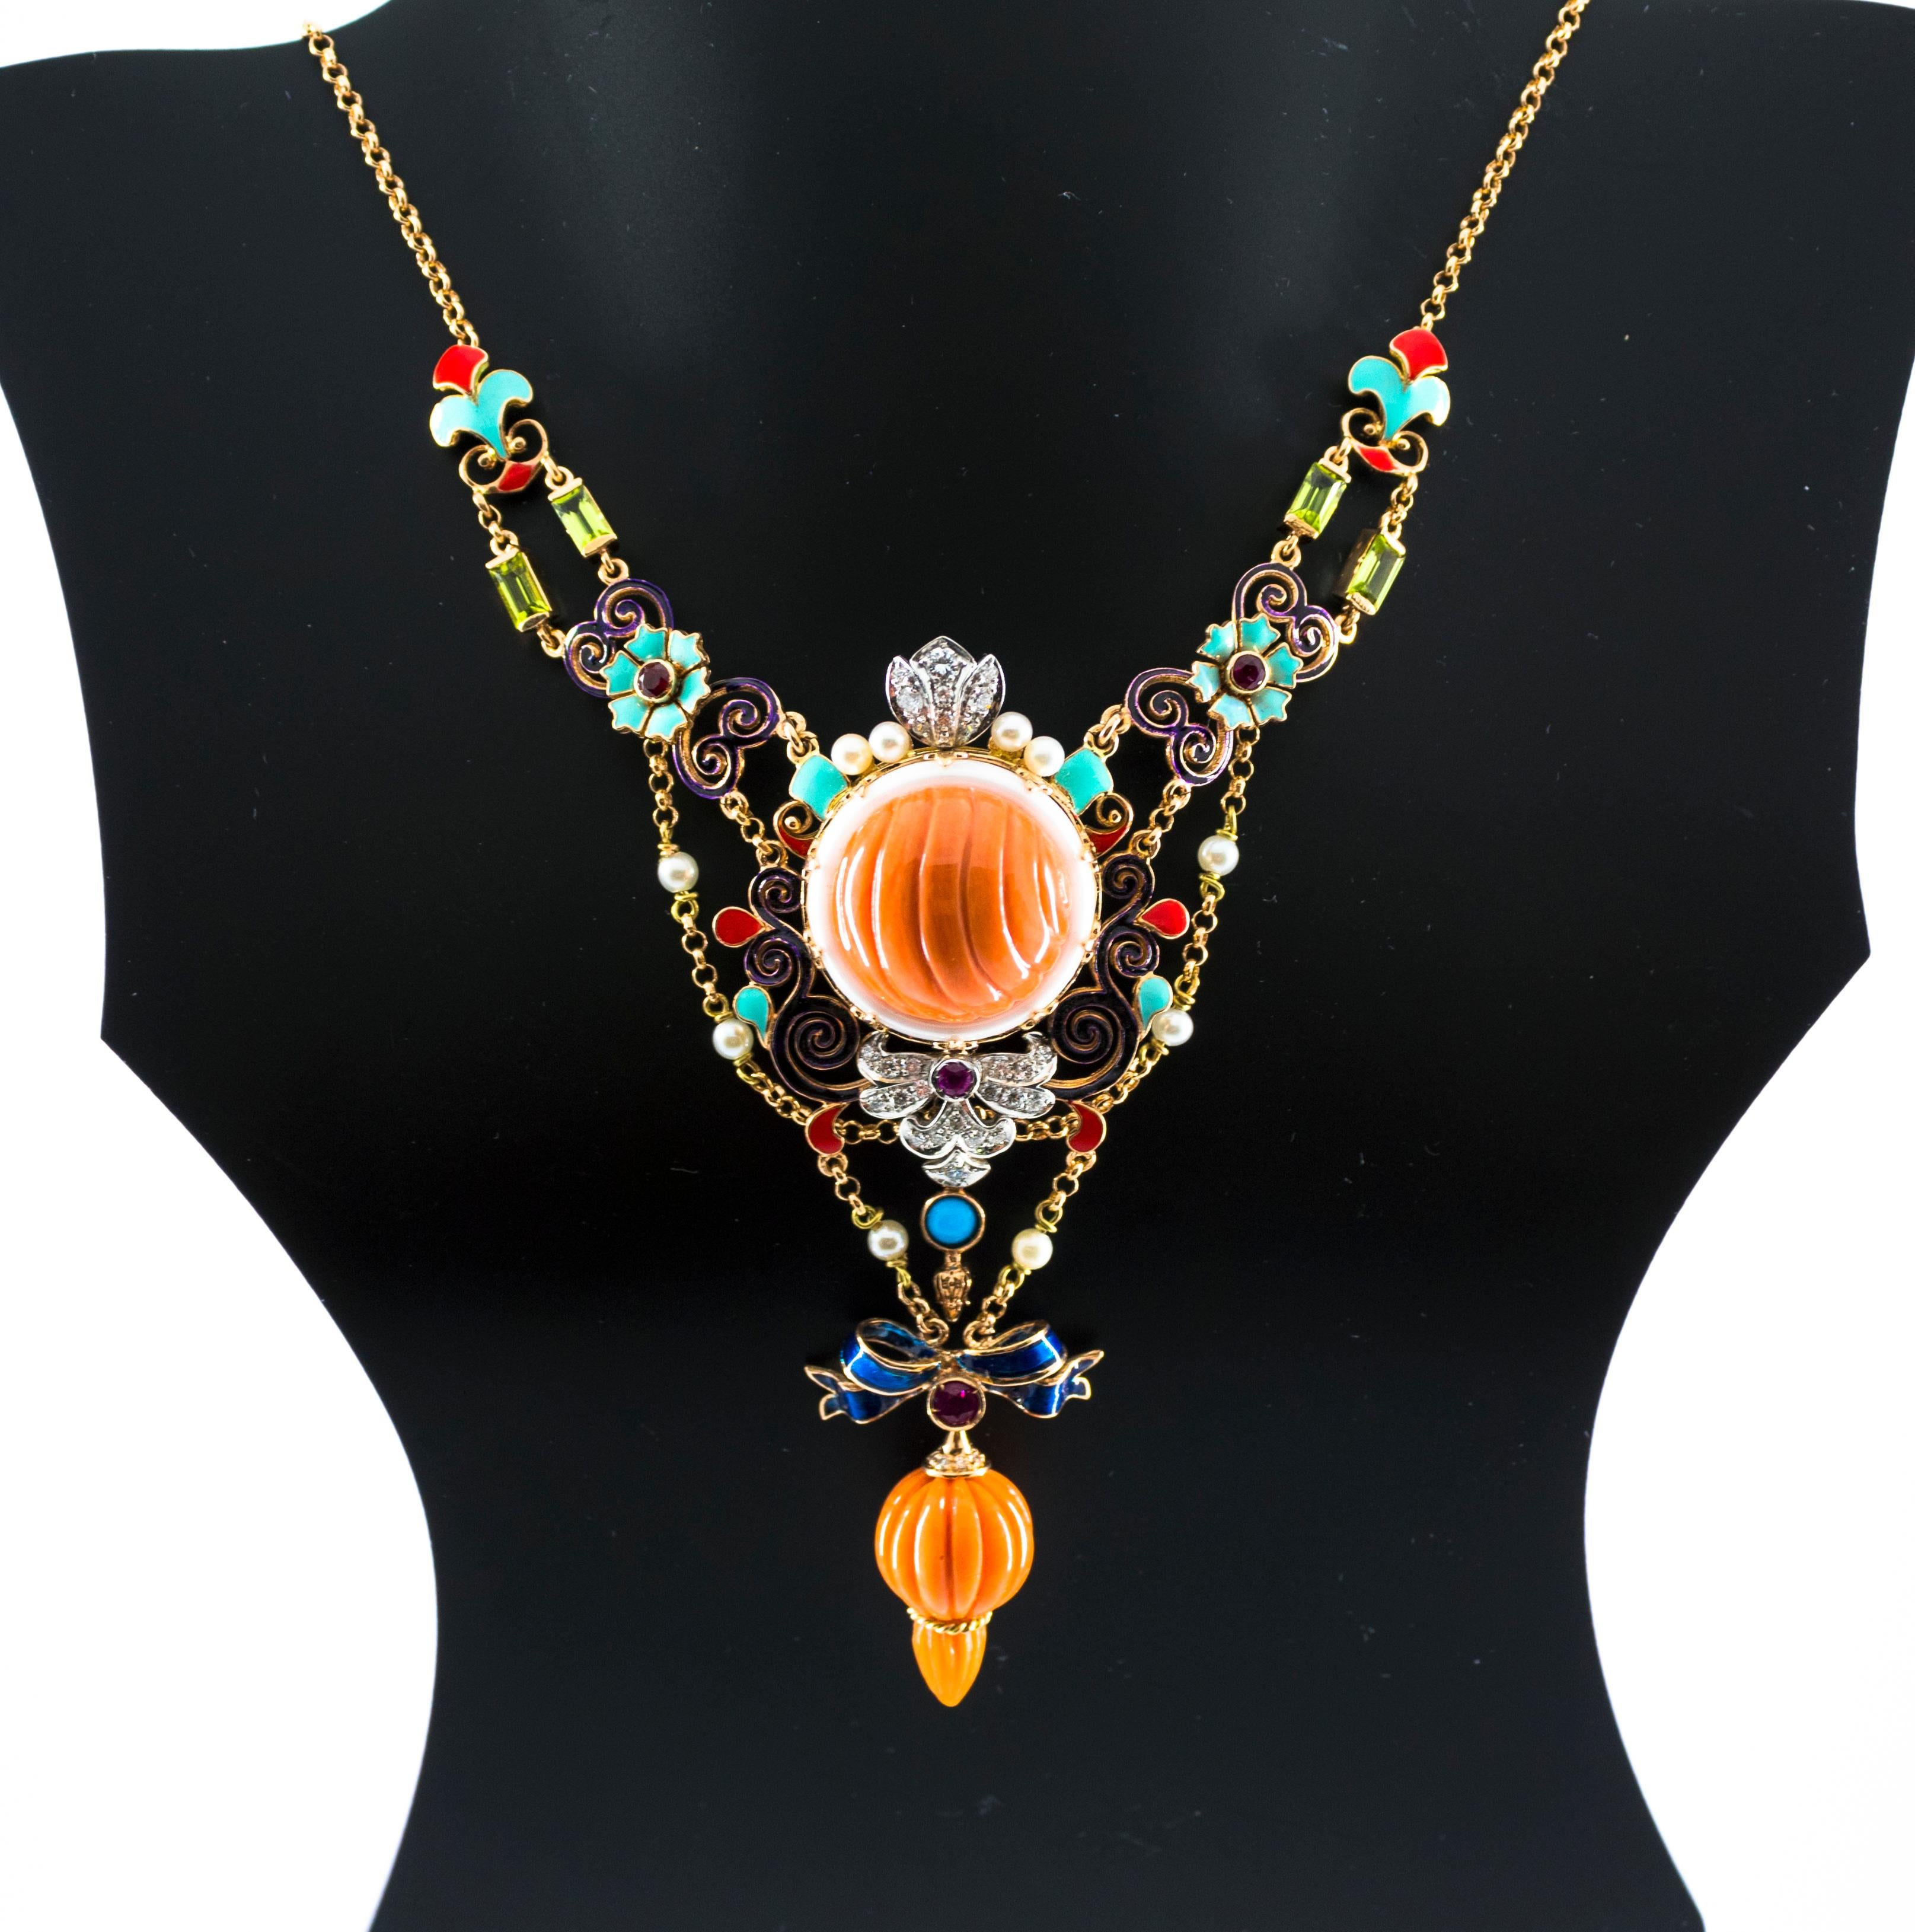 Collier Art Nouveau en or jaune avec diamants blancs, rubis, turquoises, corail, perles et émail 5